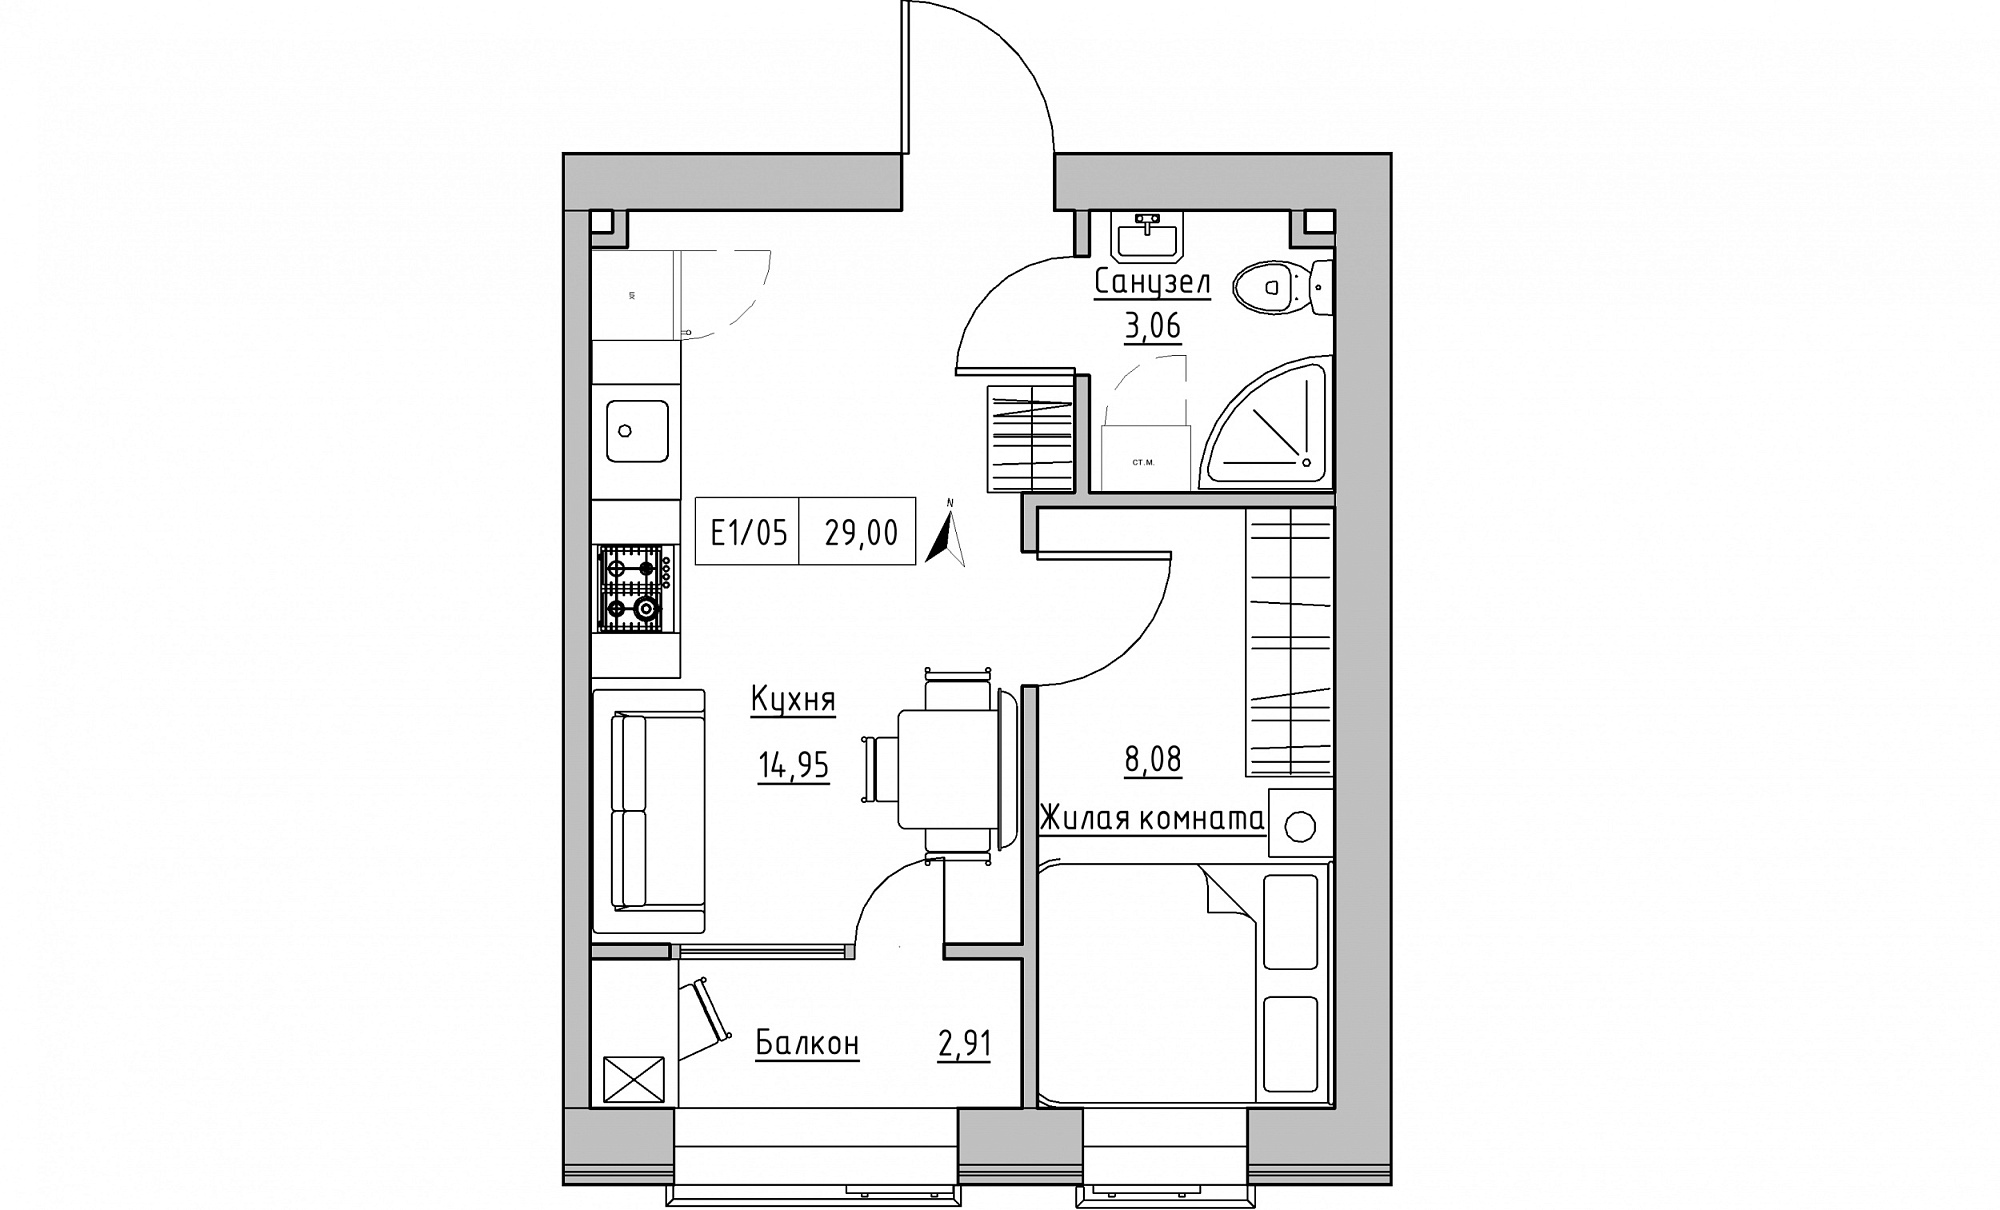 Планування 1-к квартира площею 29м2, KS-015-01/0009.